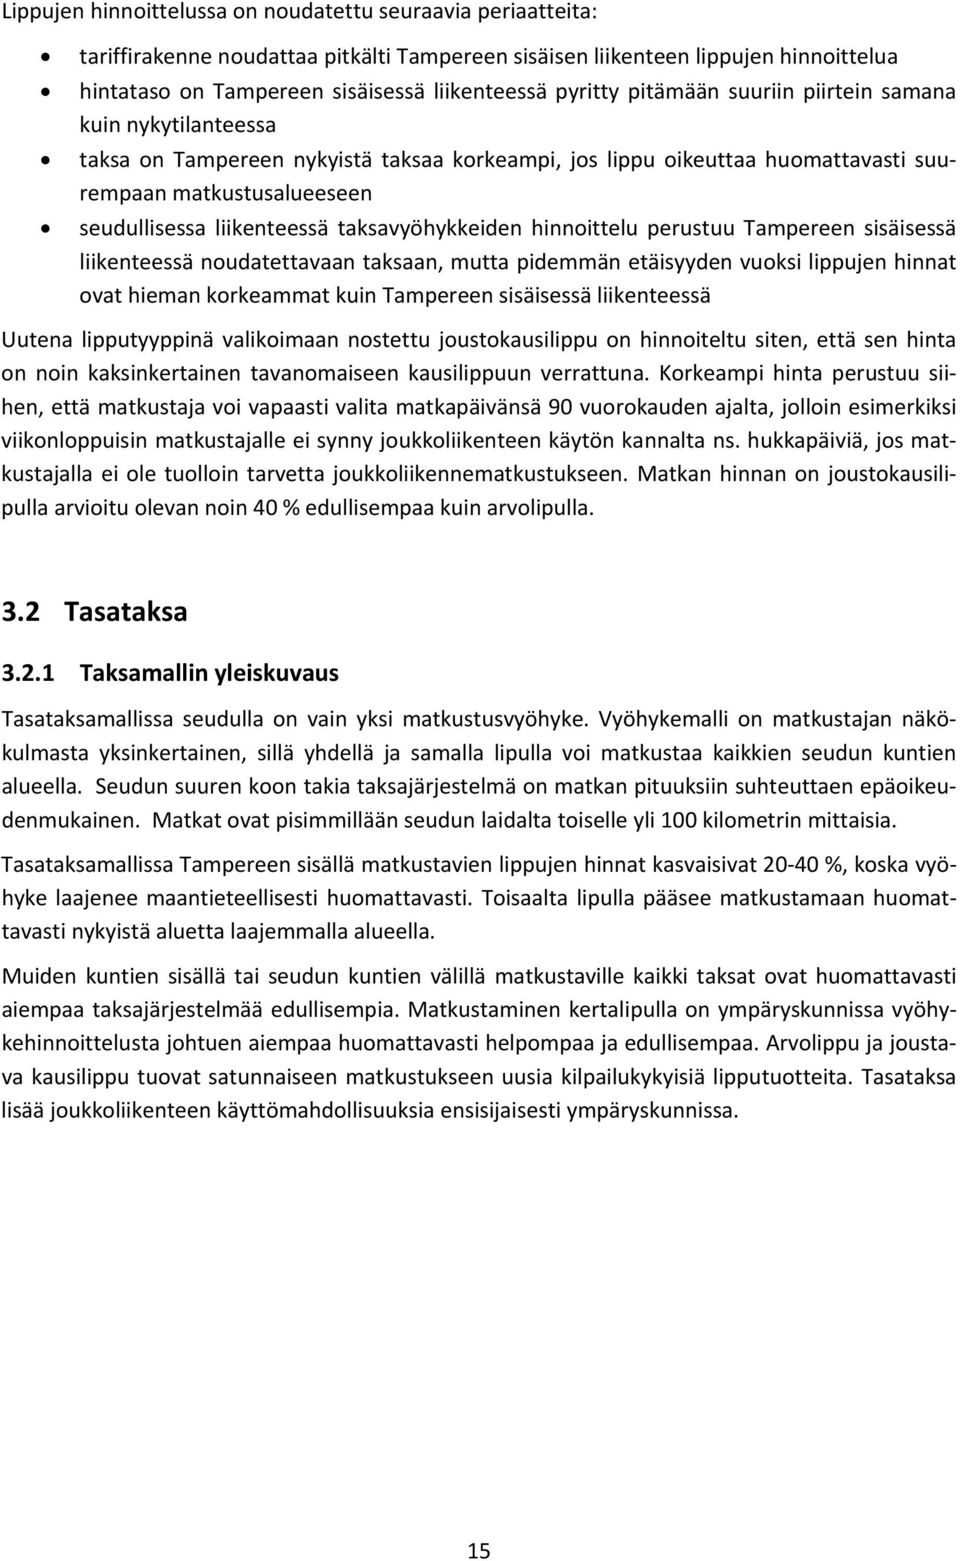 taksavyöhykkeiden hinnoittelu perustuu Tampereen sisäisessä liikenteessä noudatettavaan taksaan, mutta pidemmän etäisyyden vuoksi lippujen hinnat ovat hieman korkeammat kuin Tampereen sisäisessä